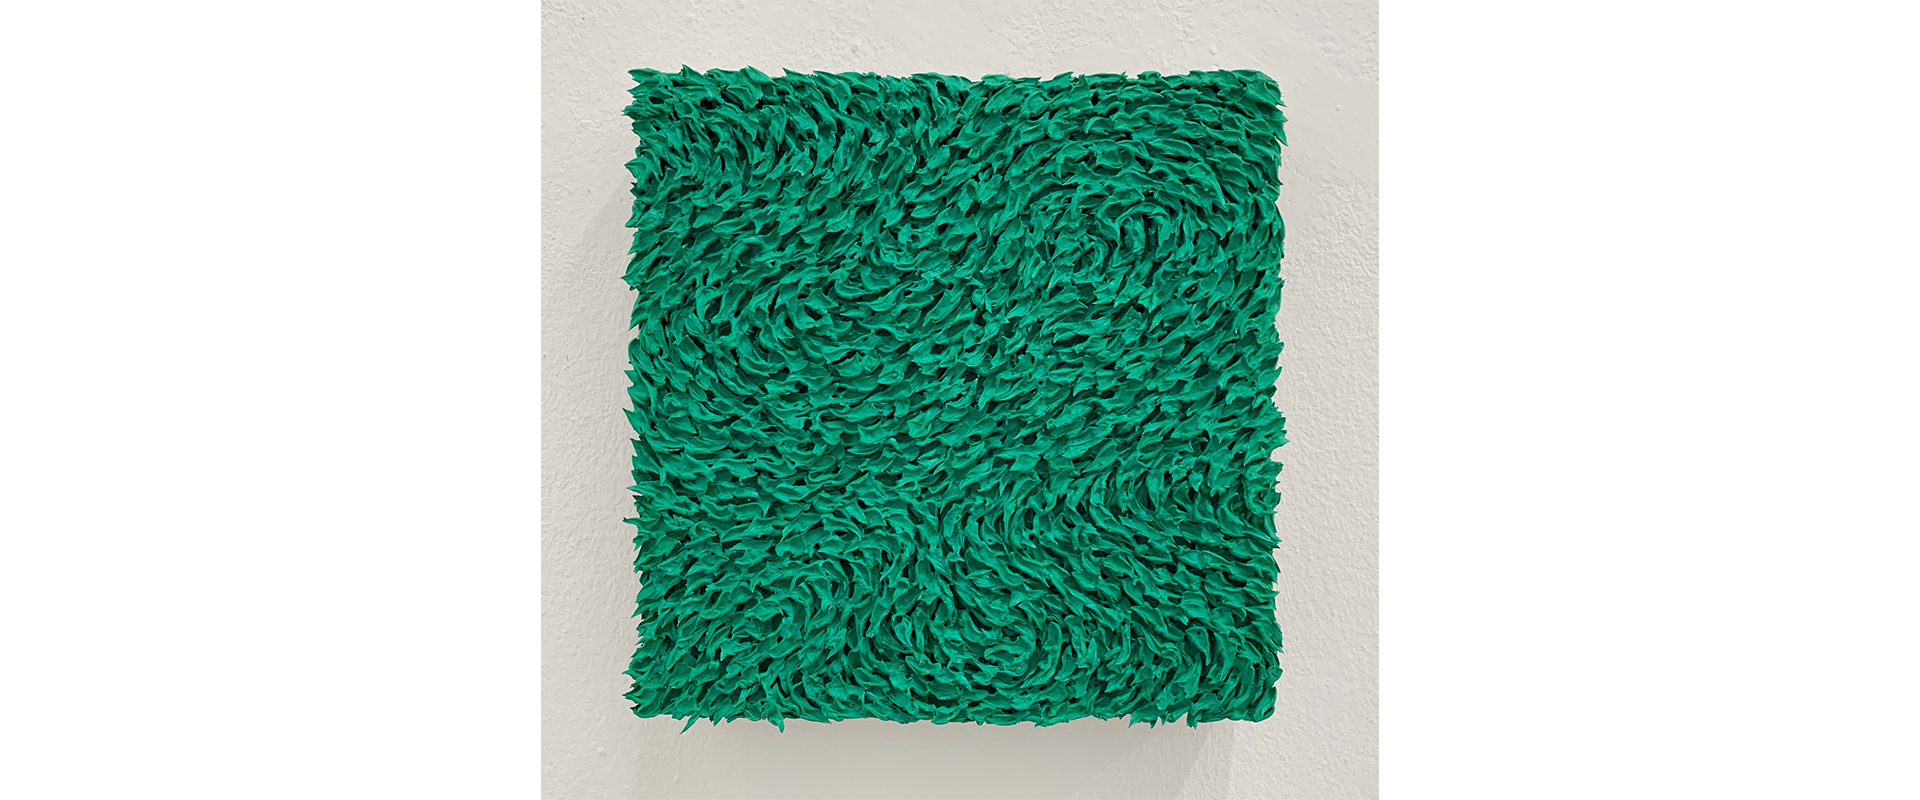 Robert Sagerman, “1,705” - 2015, Öl auf Leinwand, 30 x 30 cm